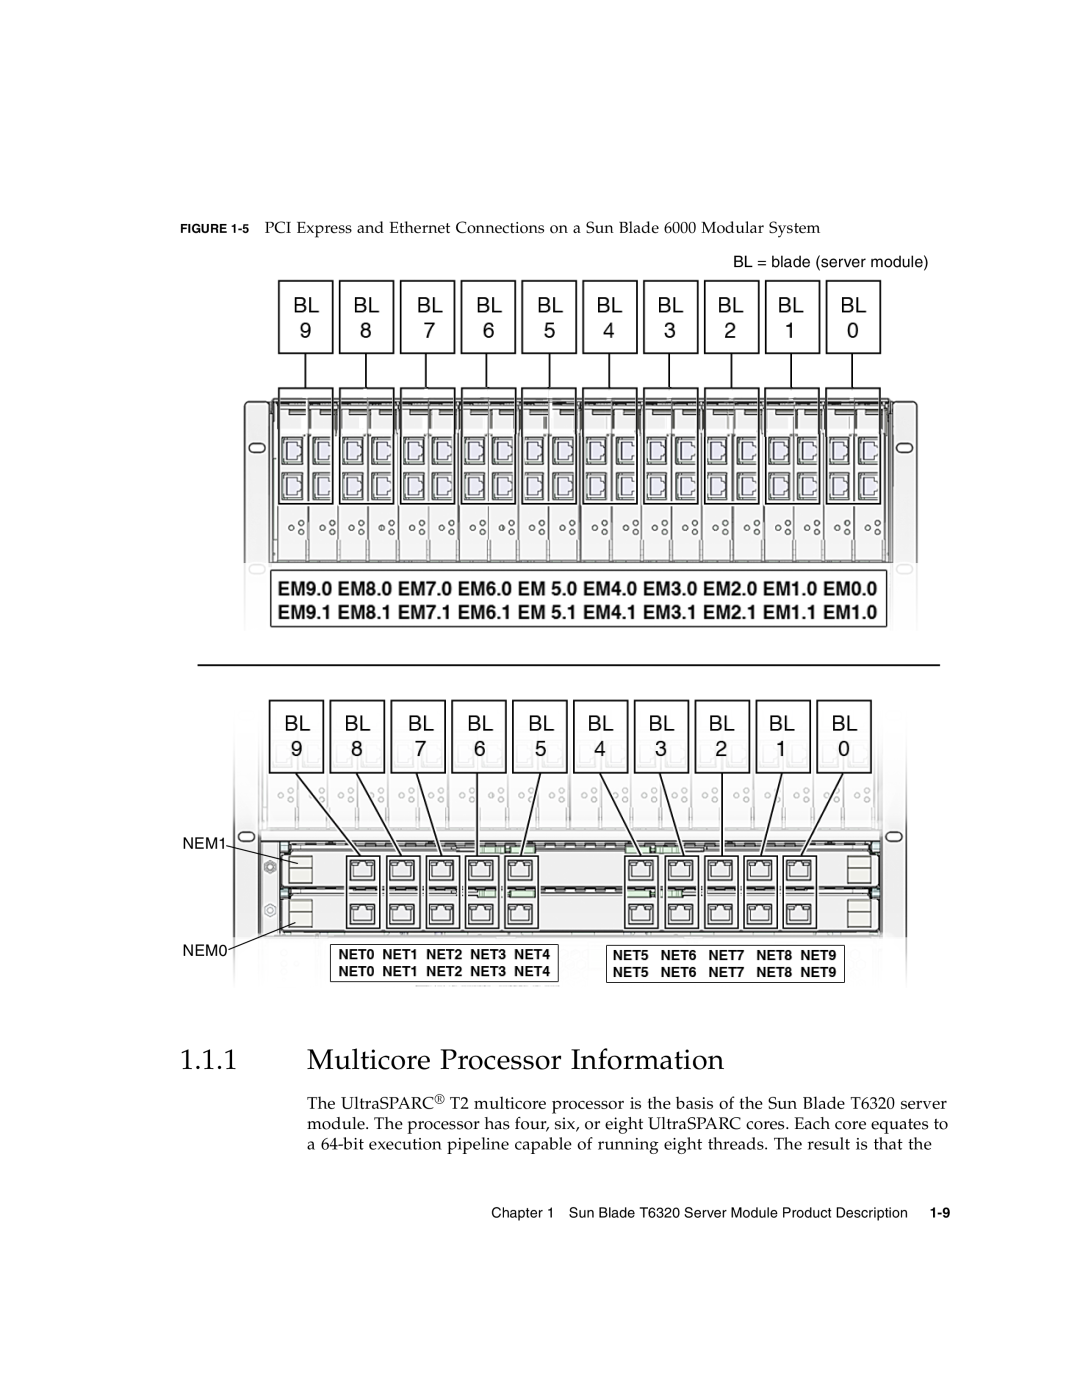 Sun Microsystems T6320 service manual Multicore Processor Information, BL = blade server module NEM1 NEM0 